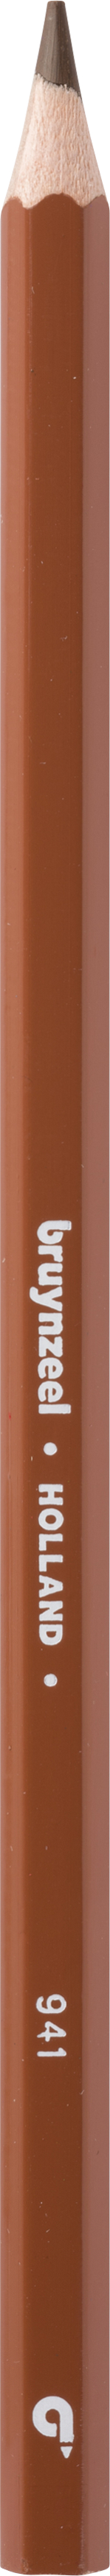 BRUYNZEEL Crayon de couleur Super 3.3mm 60516941 marron clair marron clair